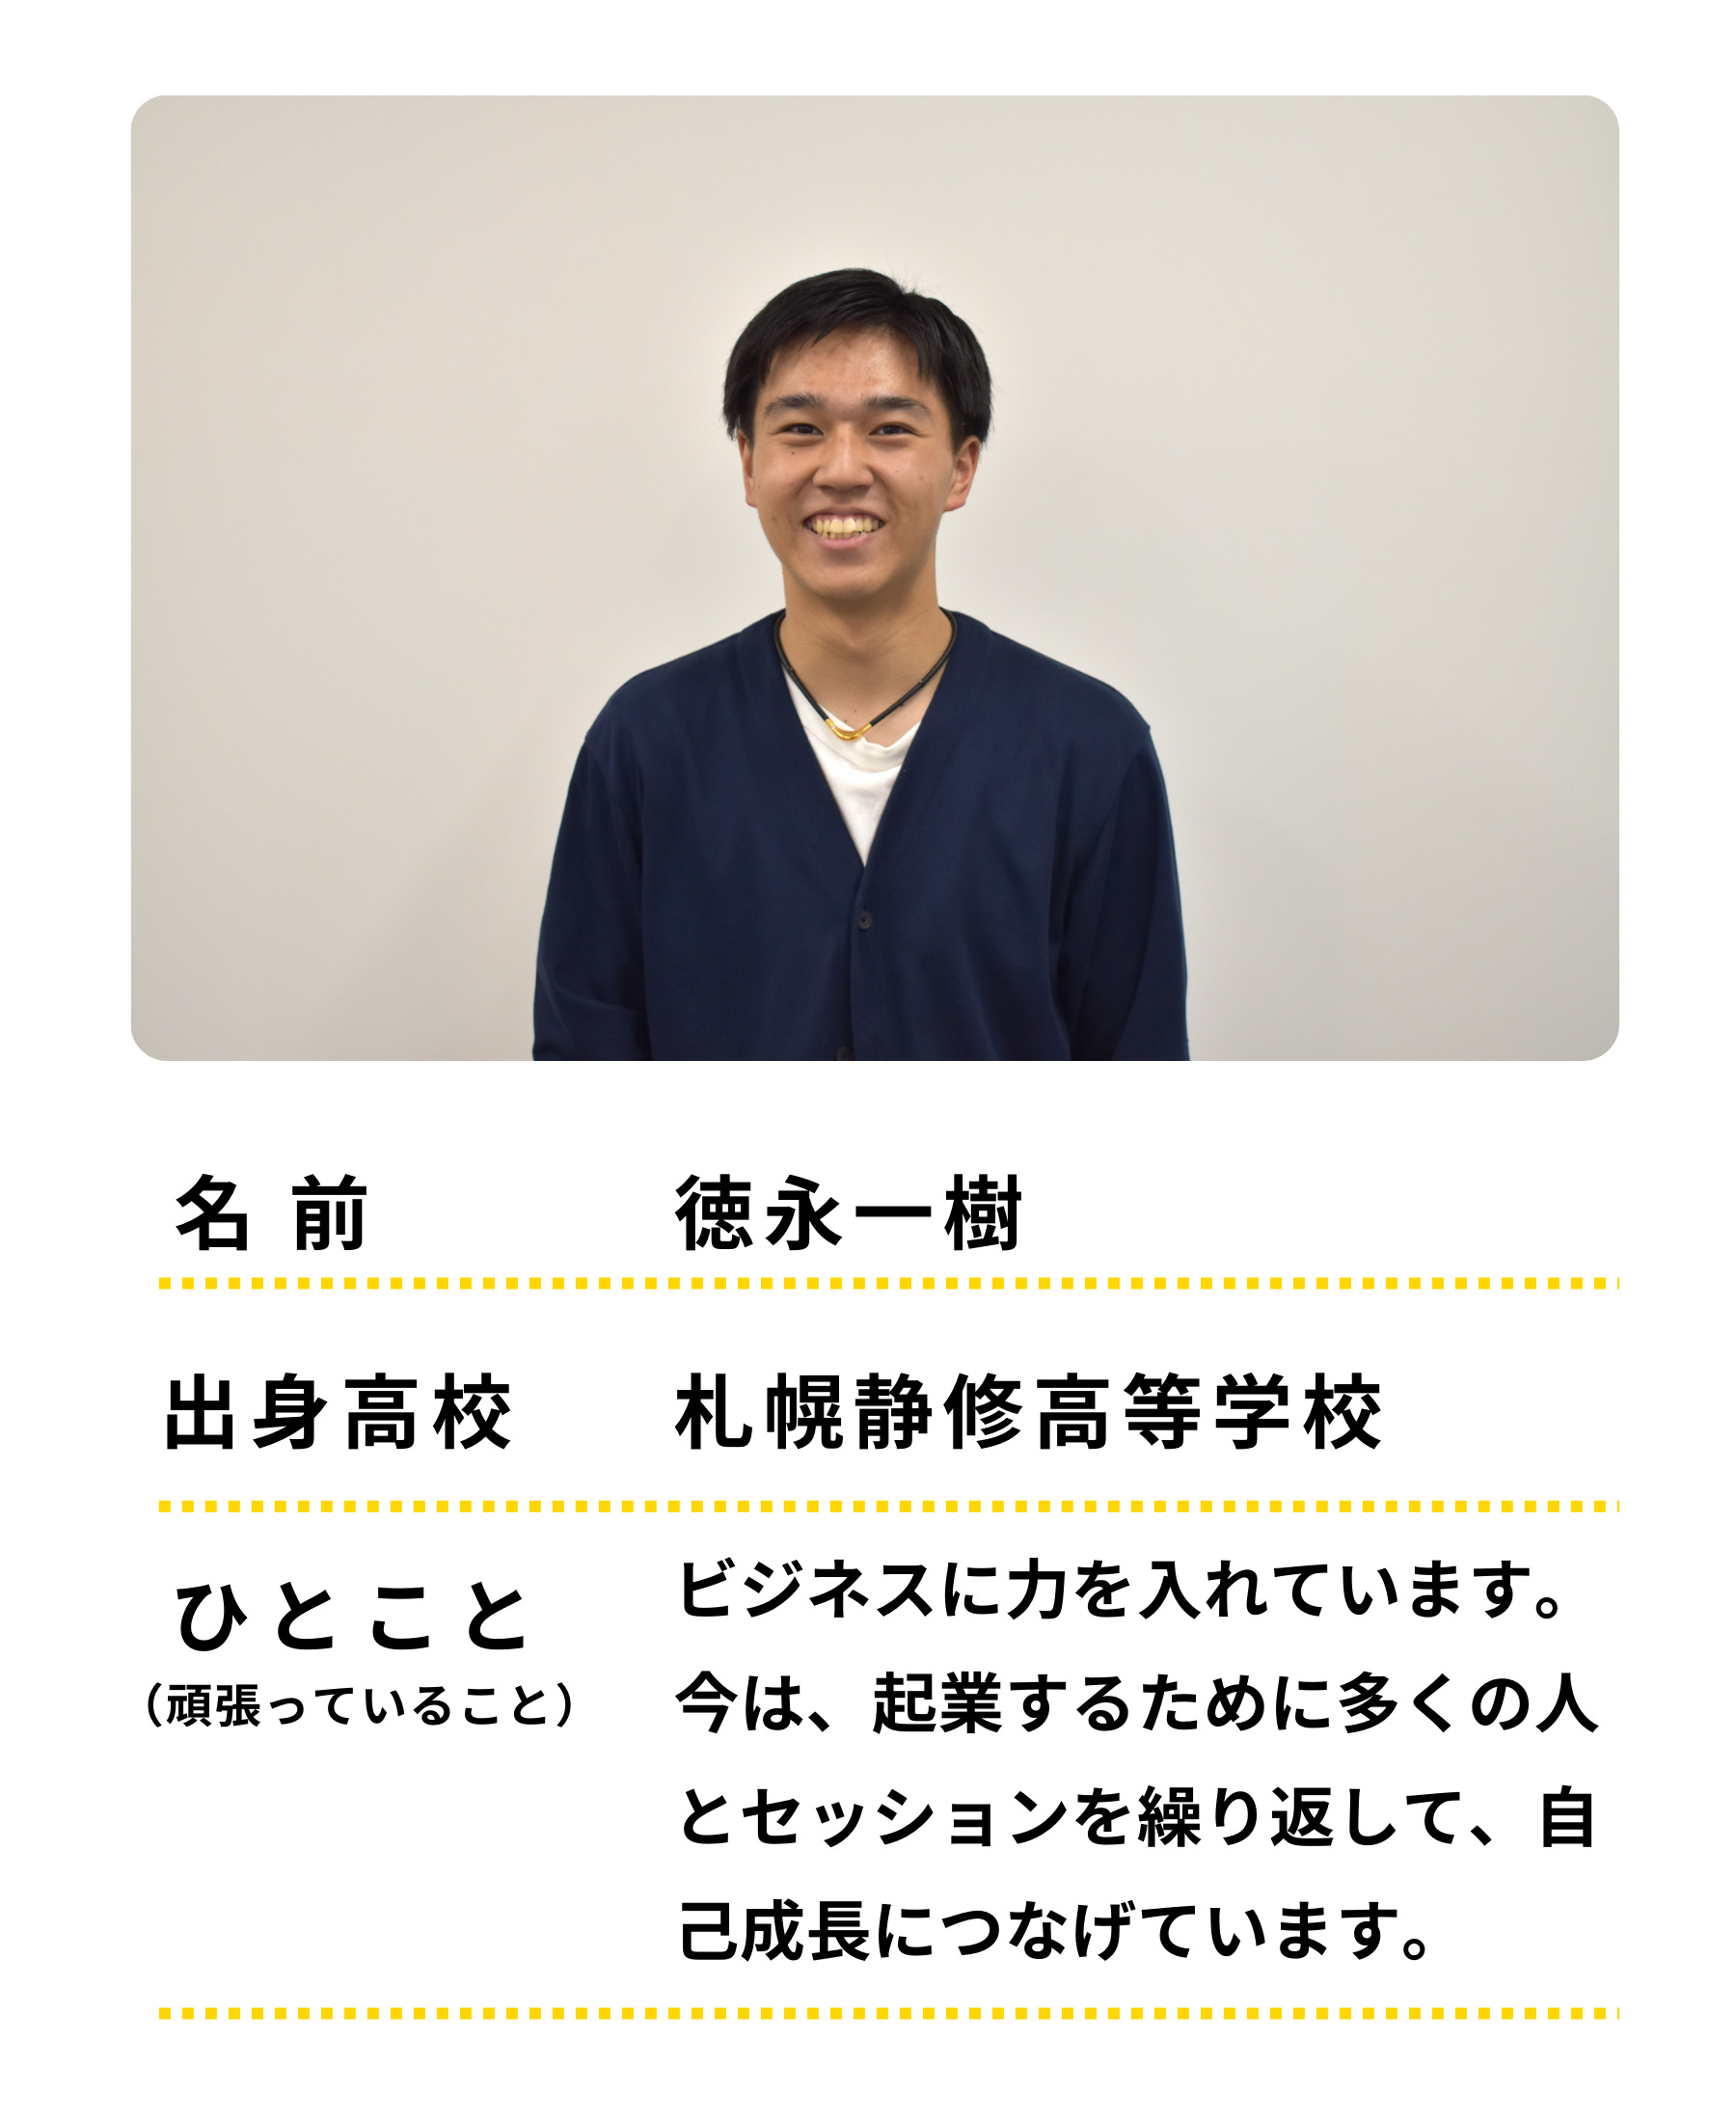 名前：徳永一樹　出身高校：札幌静修高等学校　ひとこと：ビジネスに力をいれています。今は起業をするために多くの人とセッションを繰り返して、自己成長につなげています。